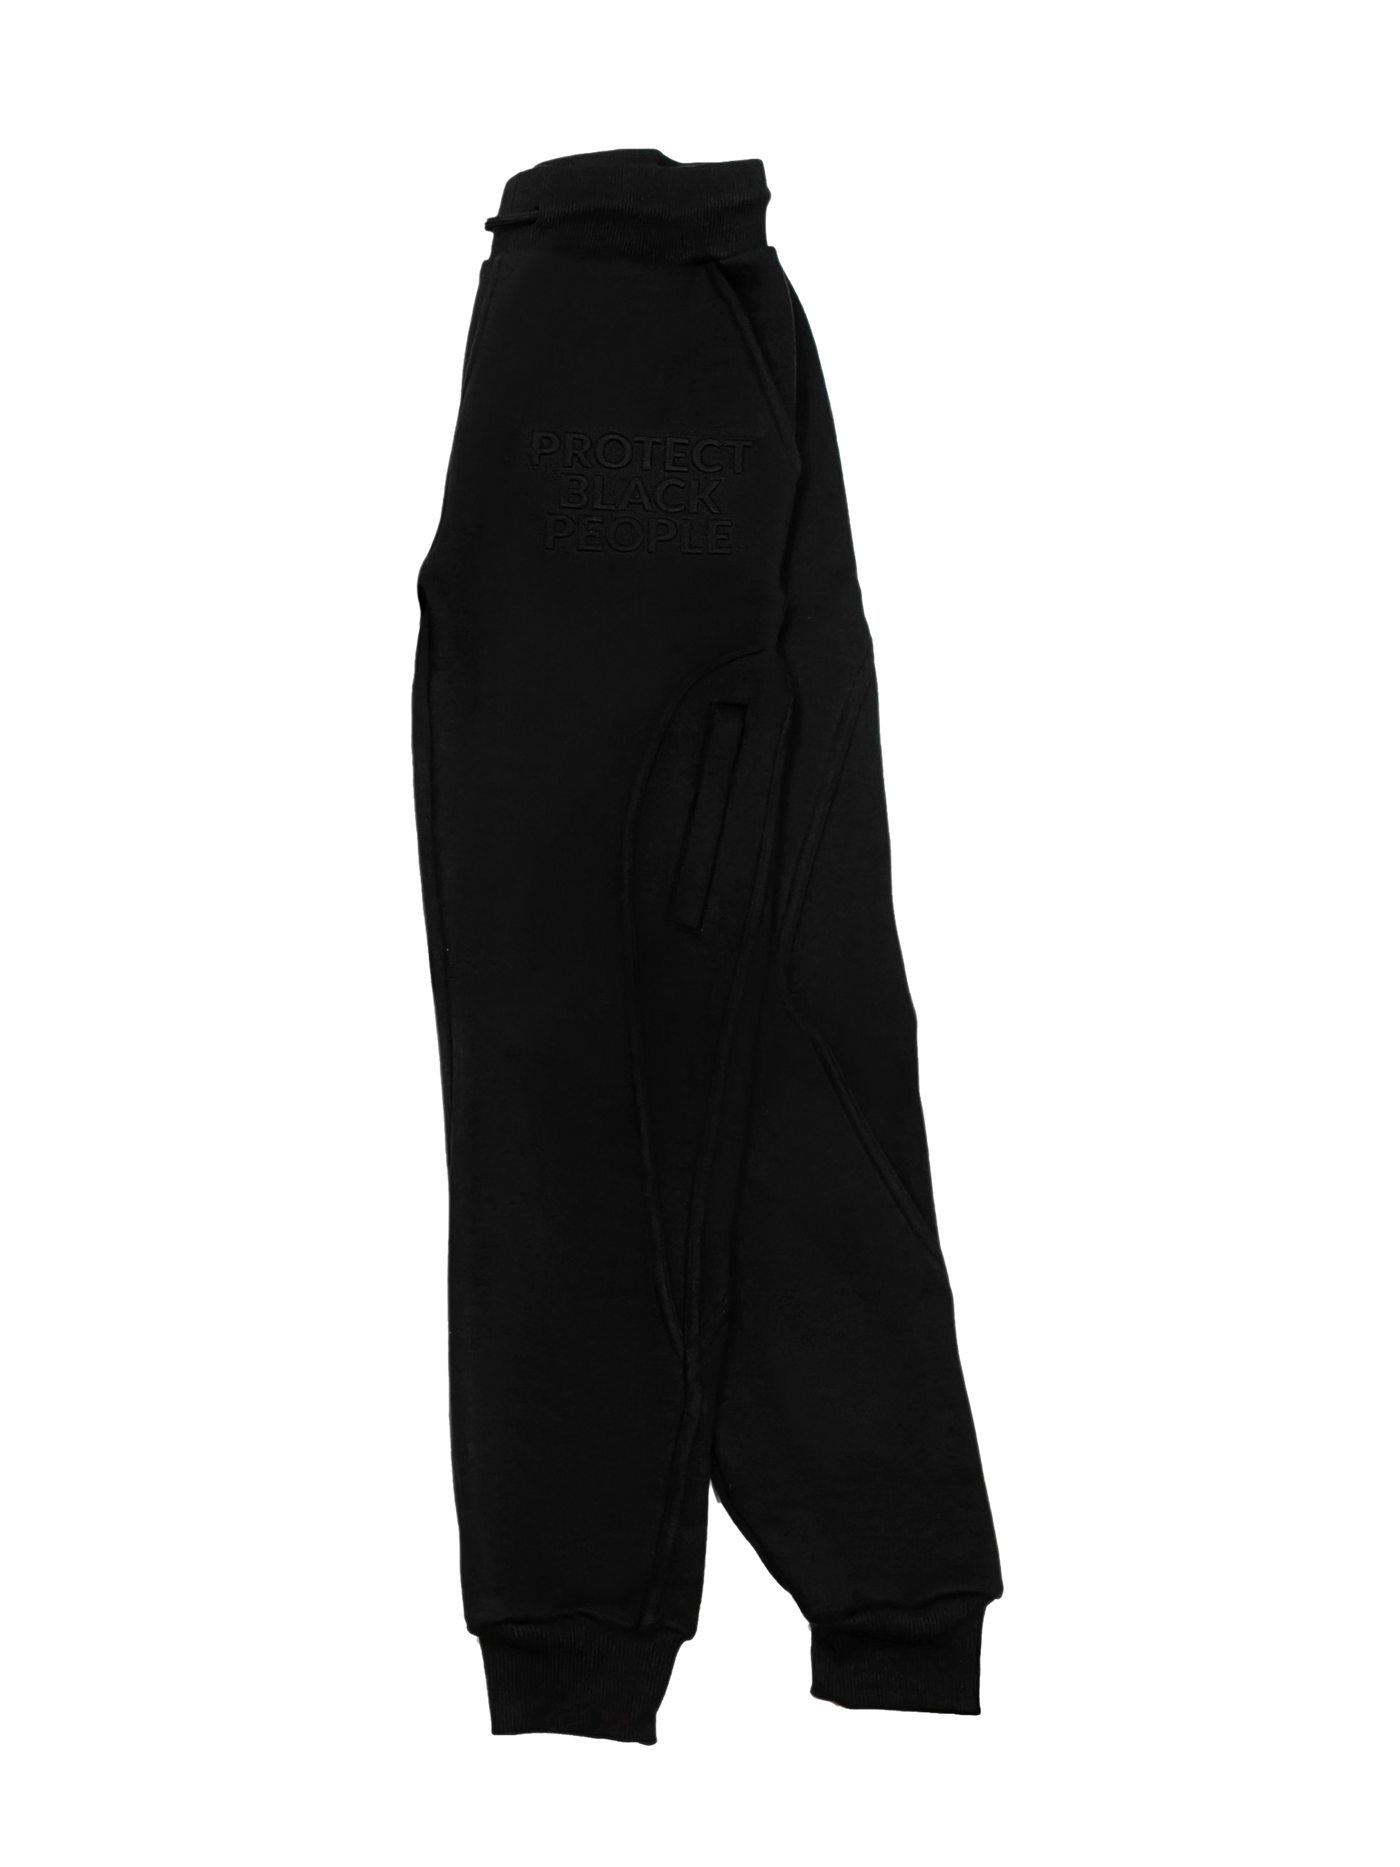 PBP - Sweatpants (Black) - 3D Embroidery